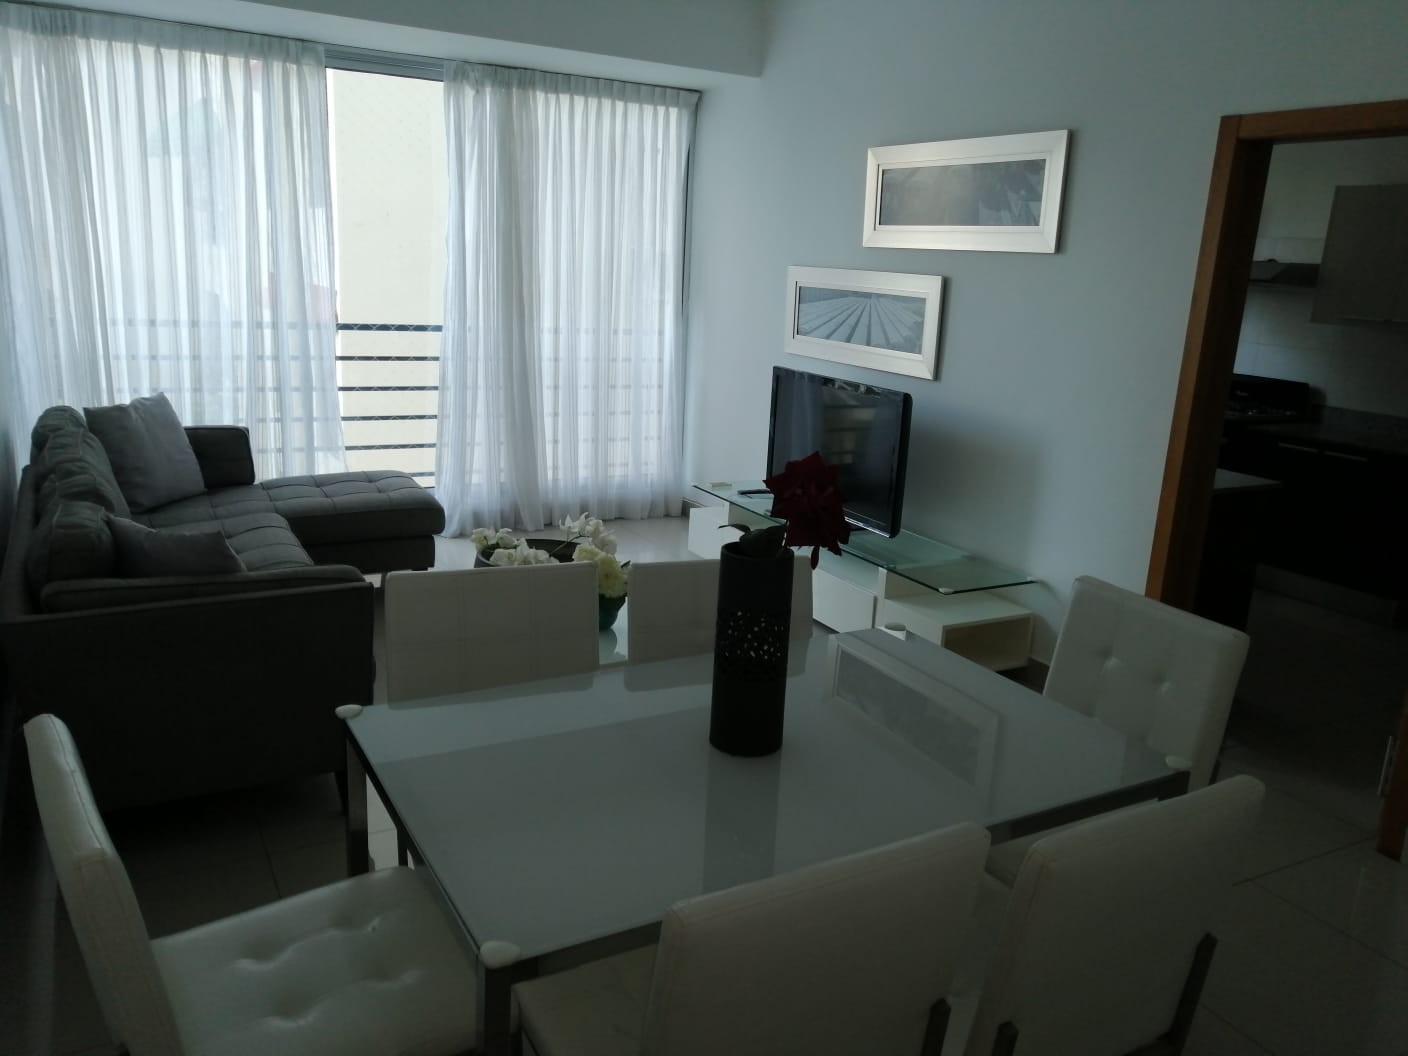 apartamentos - Alquiler: Apartamento 3 habs, amueblado, equipado con linea blanca, Serralles. 
 2